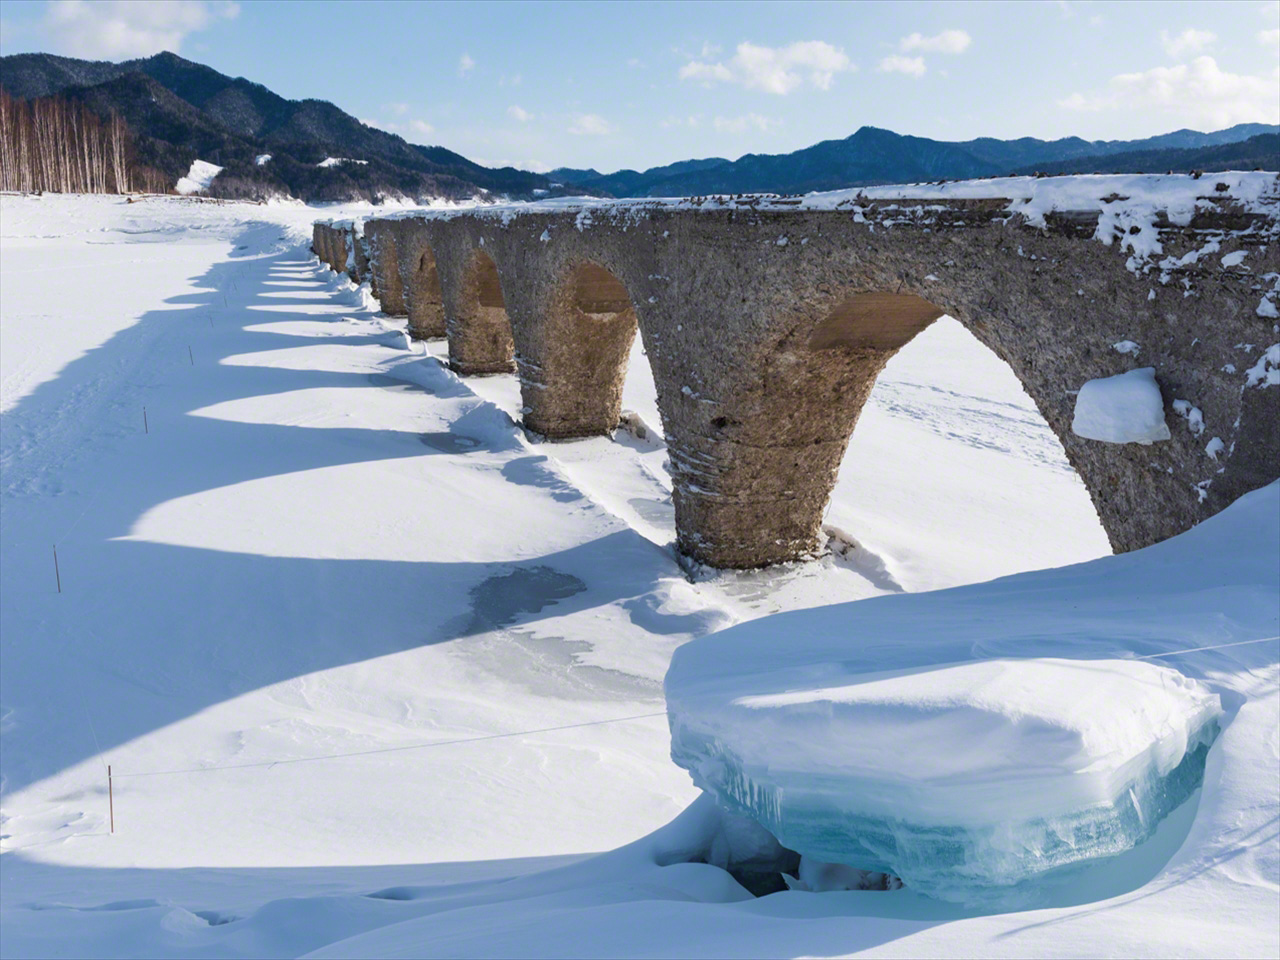  في فبراير/ شباط، يظهر الجسر وسط المناظر الطبيعية المتجمدة، مع تكون الجليد الكثيف على البحيرة حيث تنخفض درجات الحرارة إلى 25 درجة مئوية تحت الصفر.